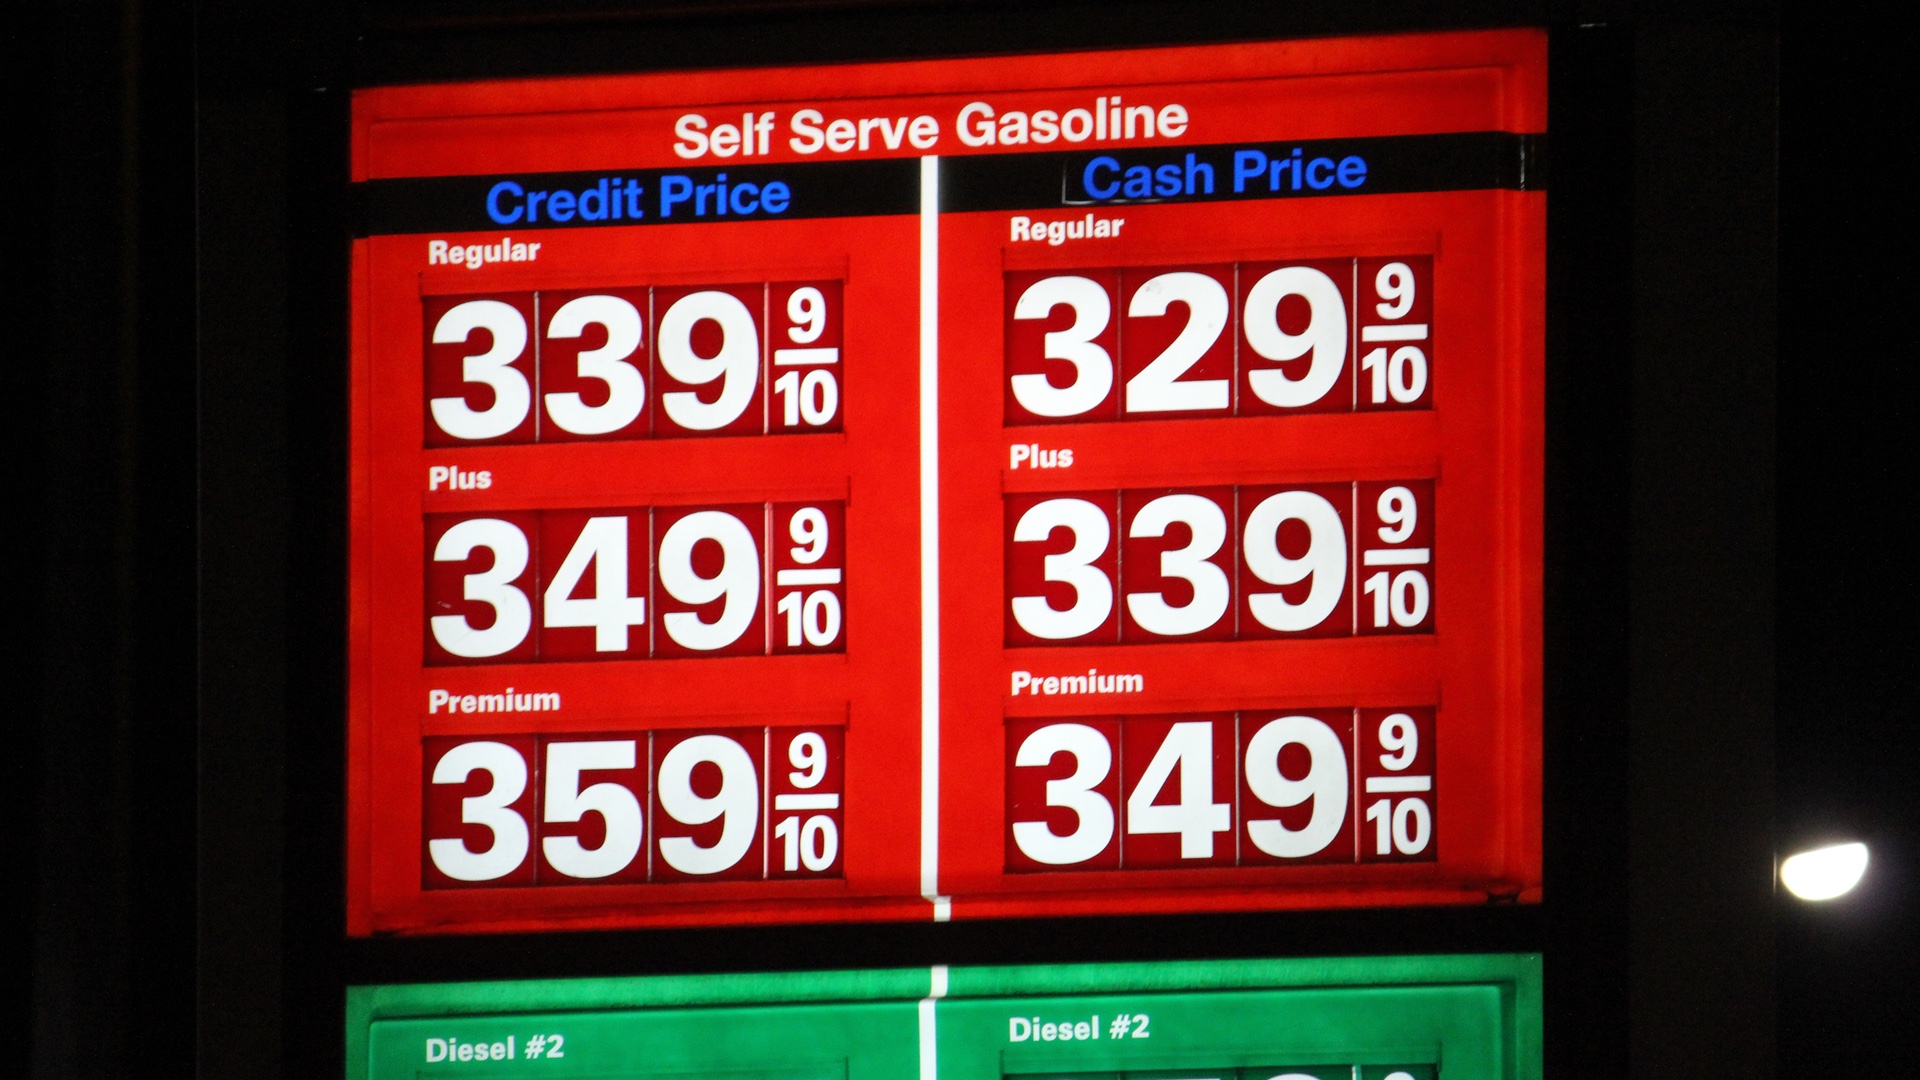 Gas Price 20141026 76 3299